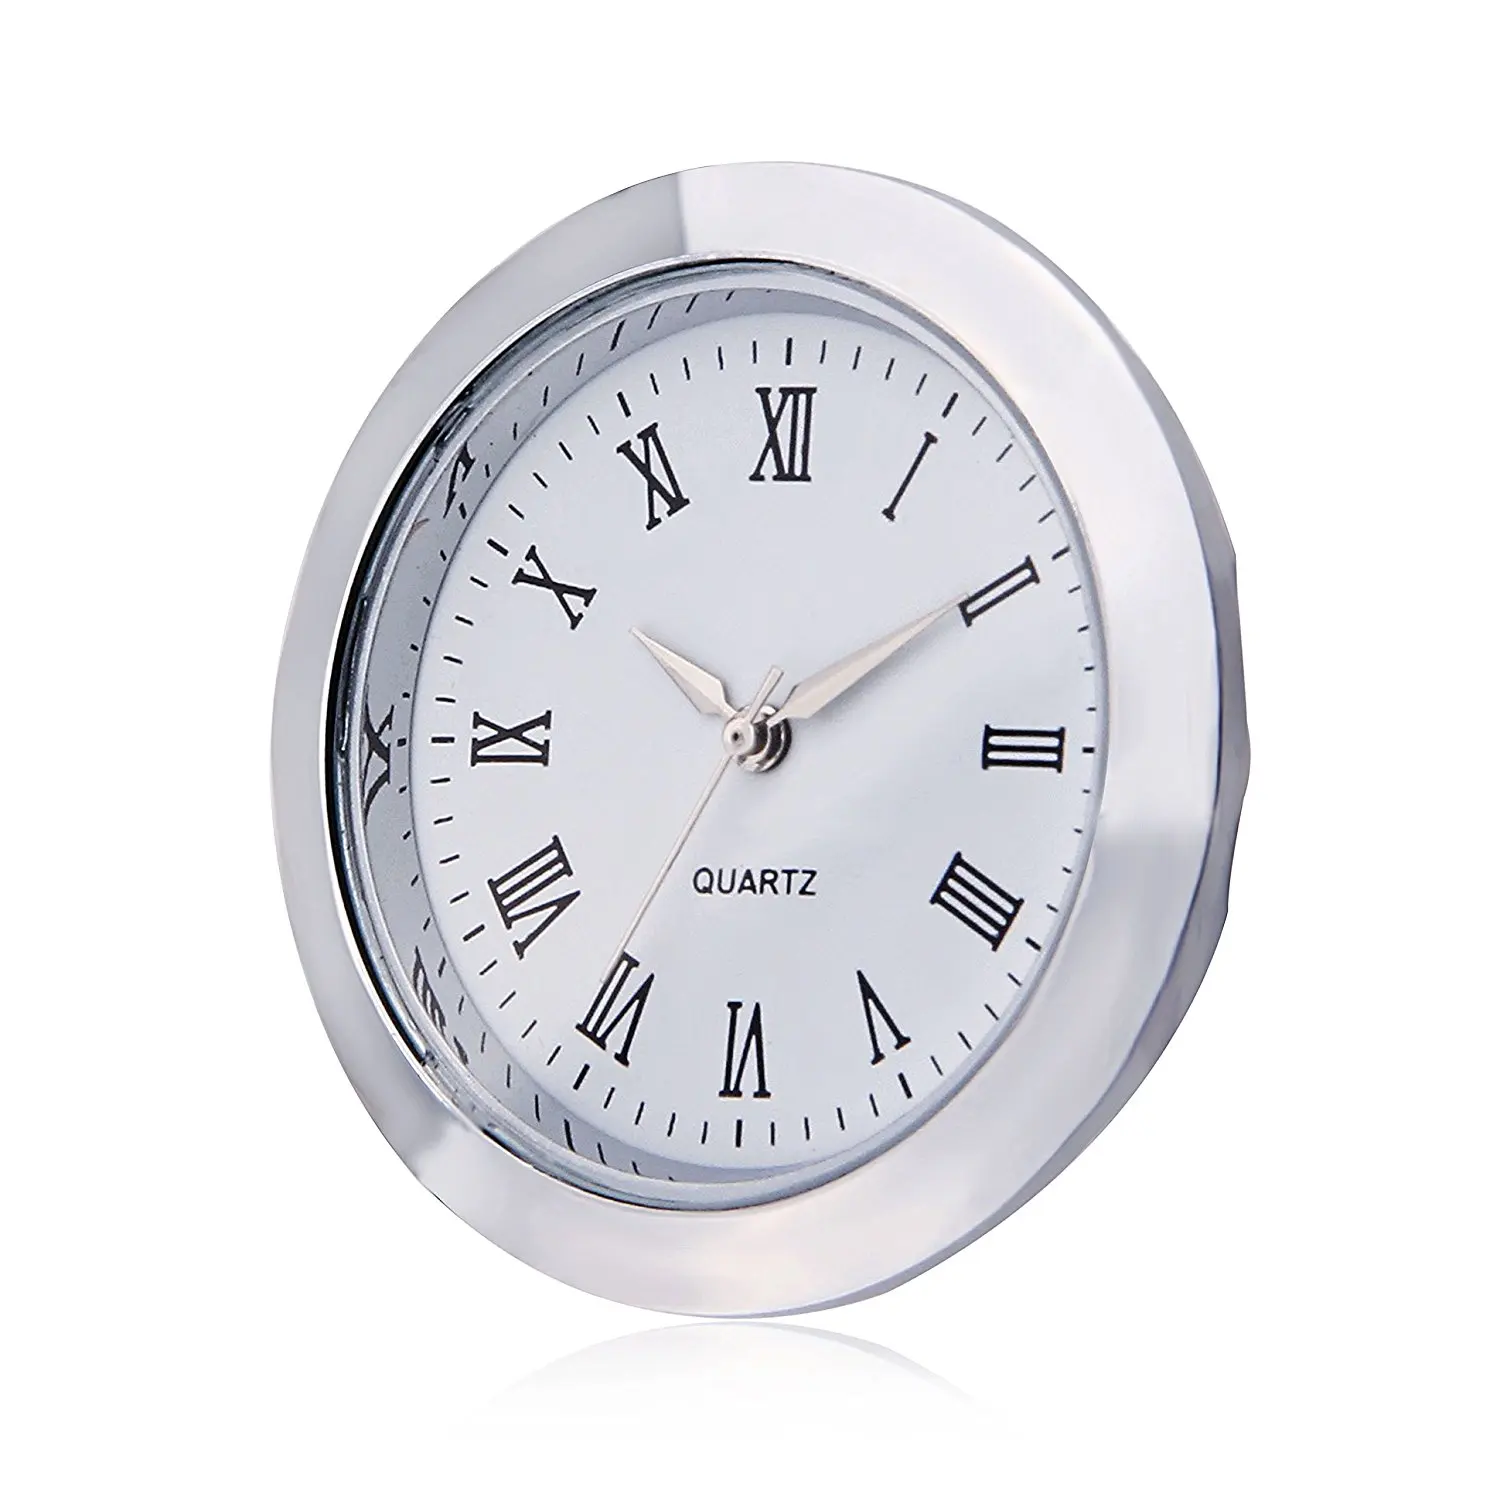 Мини-часы с кварцевым механизмом, круглая вставка 1 7/1"(35 мм), белый циферблат, серебристый тон, ободок, римские цифры, циферблат часов